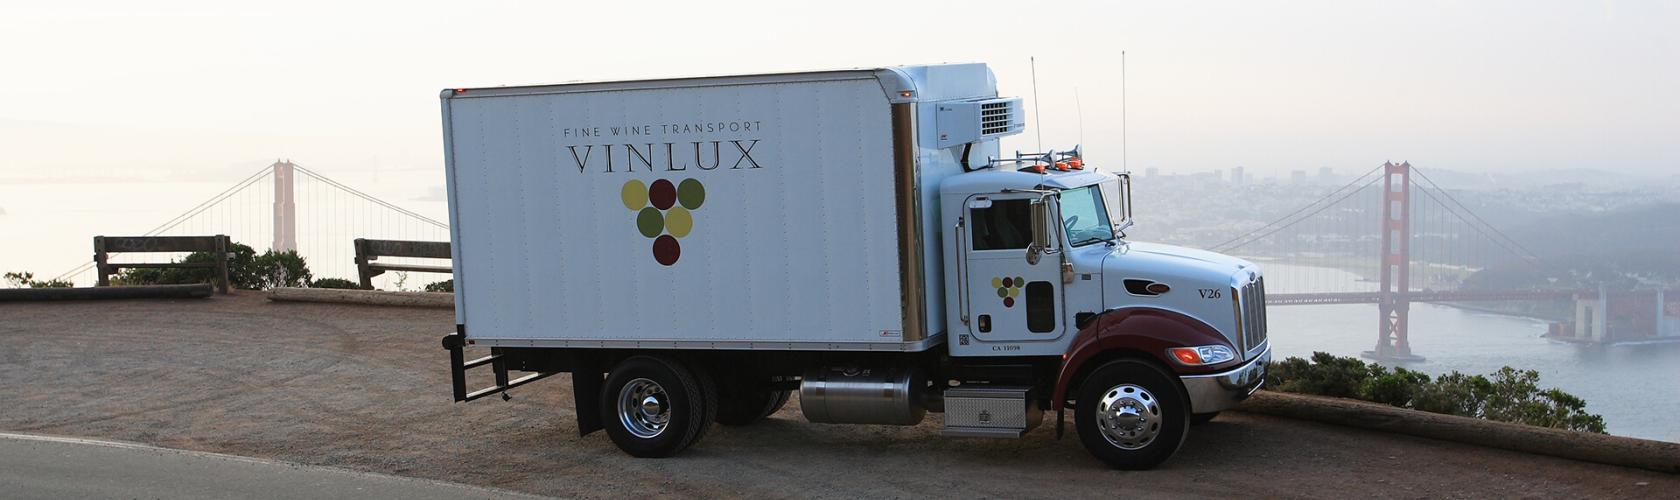 VinLux truck near Golden Gate Bridge